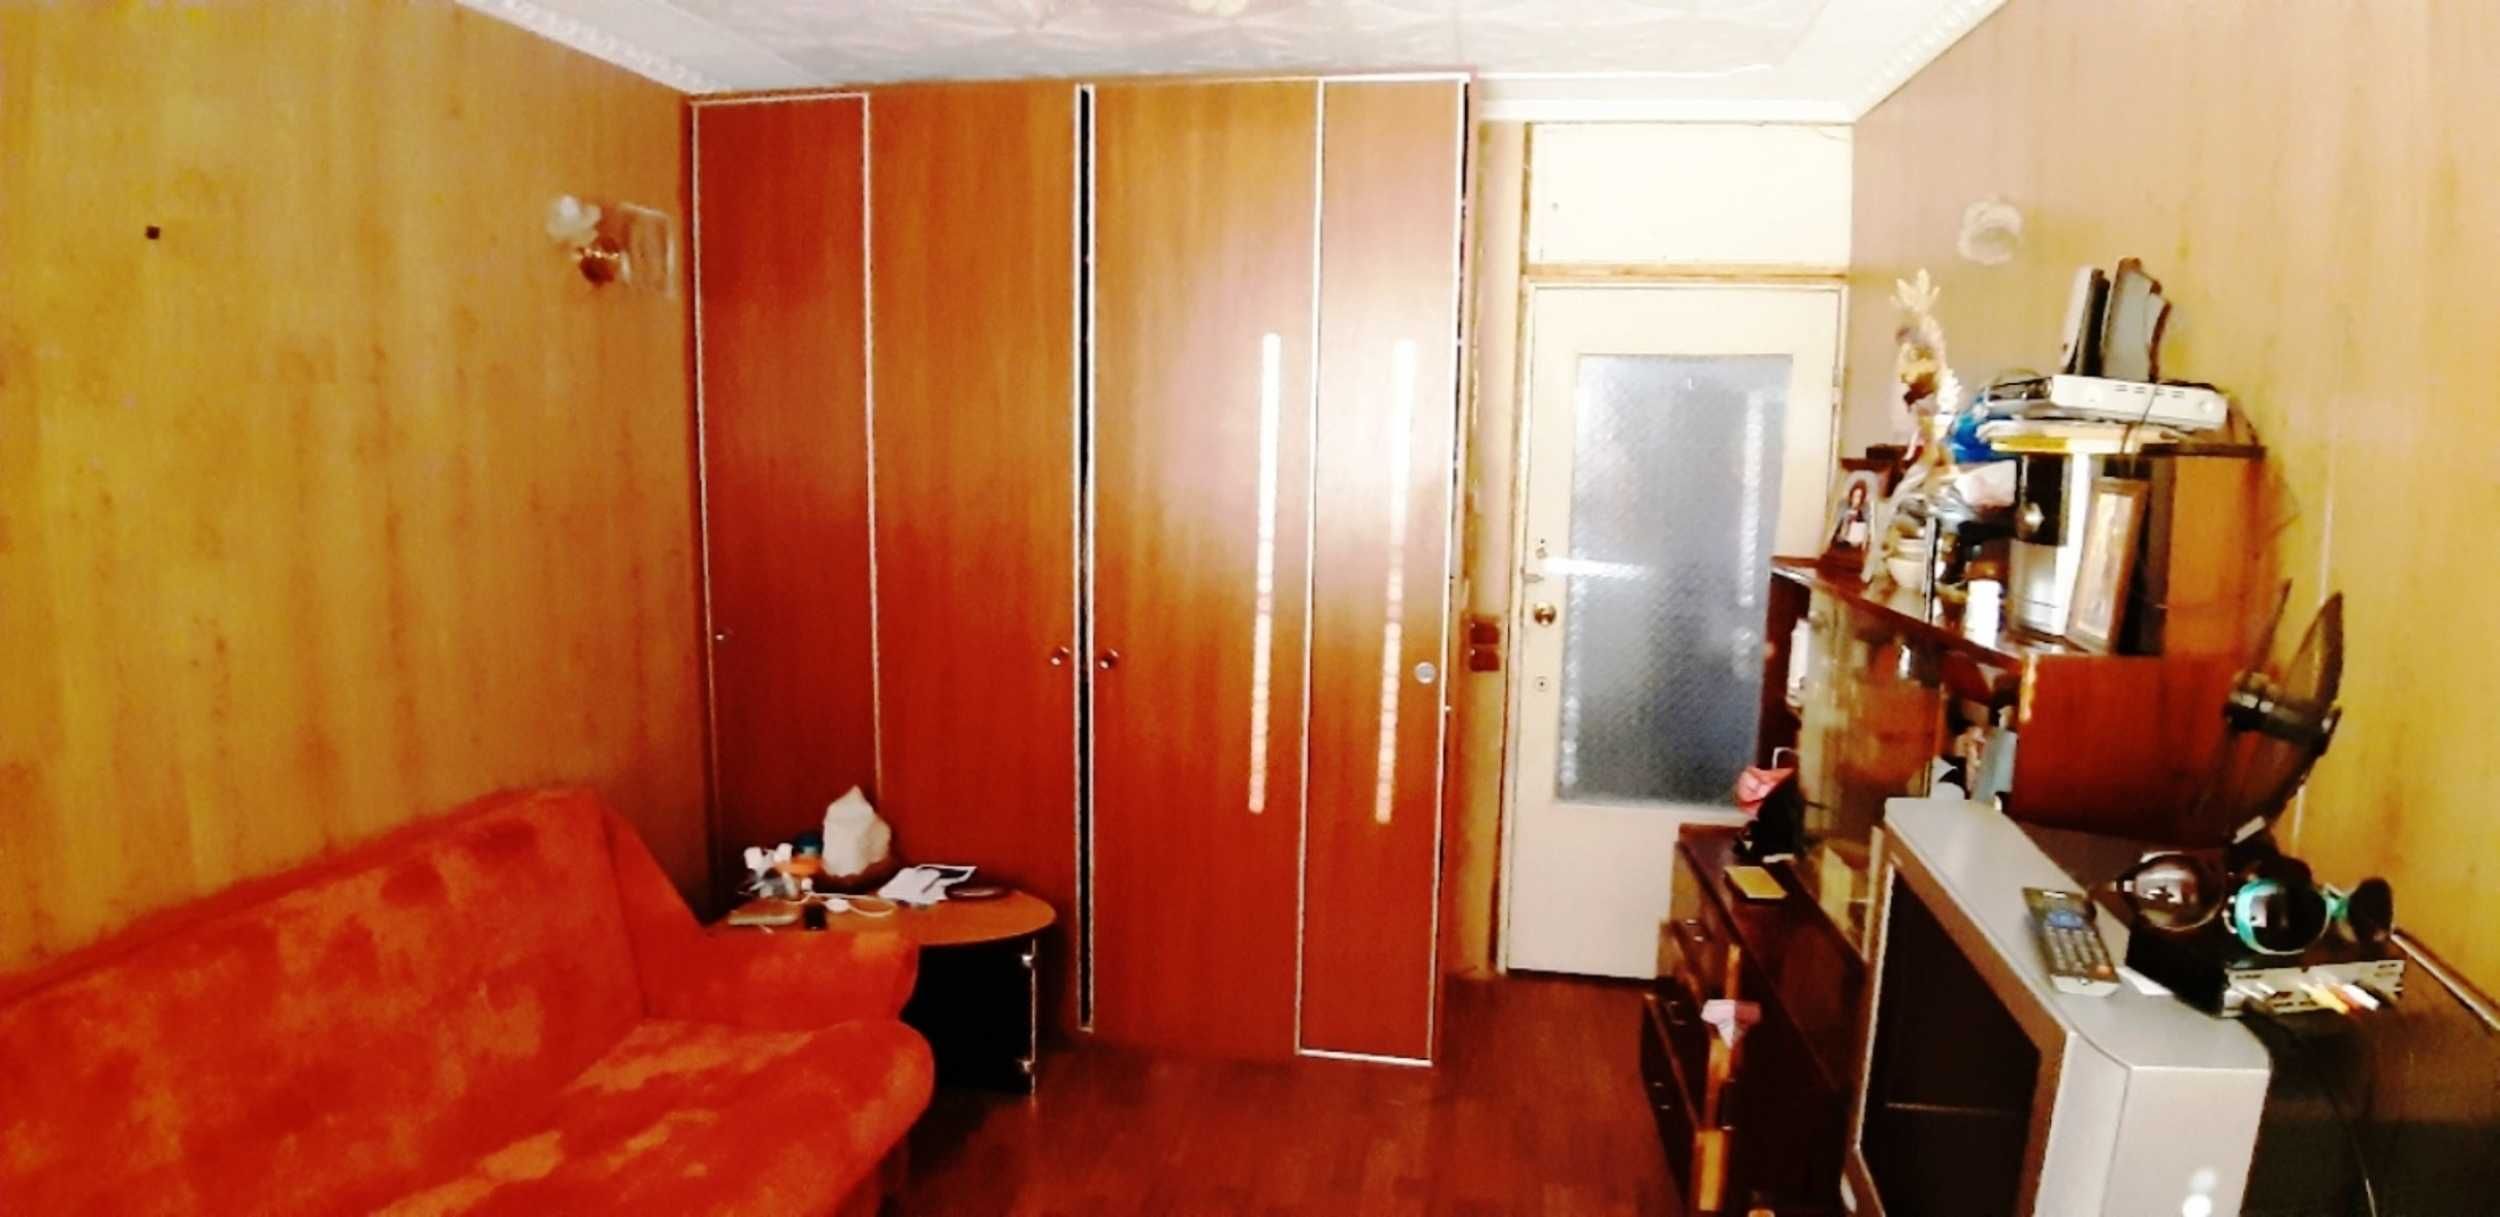 Продается 2 комнатная квартира по адресу: пр-кт Гонгадзе 20з